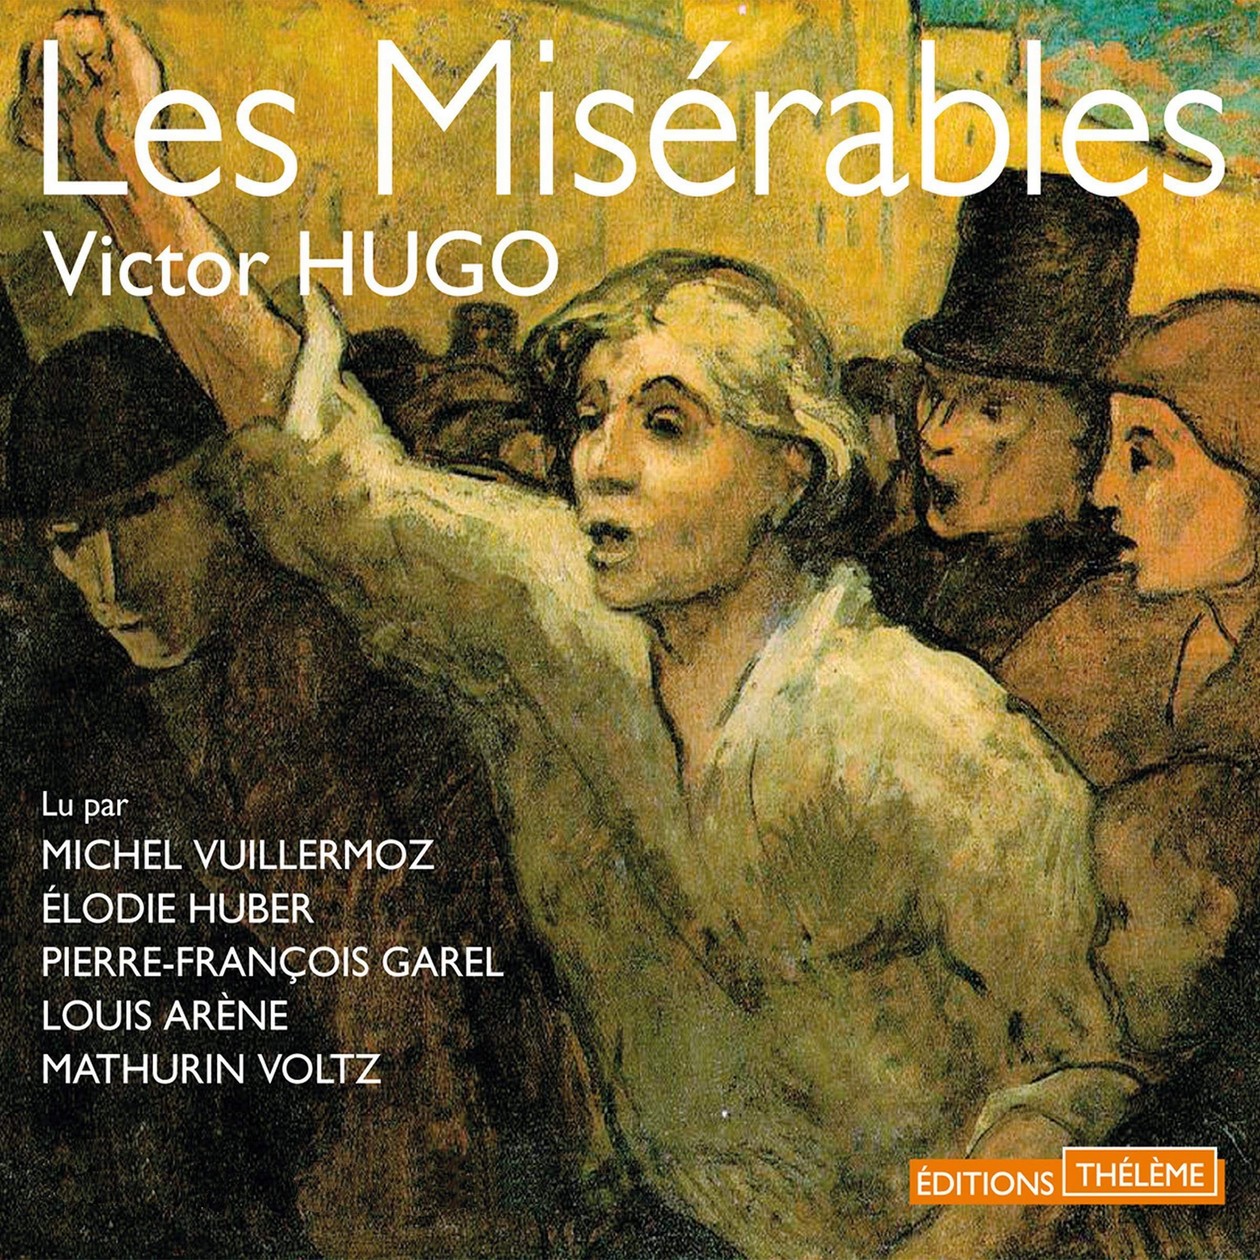 Audiobook / Livre audio : Hugo, Les Misérables. Lu par Michel Vuillermoz, Élodie Huber, Pierre-François Garel, Louis Arène, Mathurin Voltz (56h52)